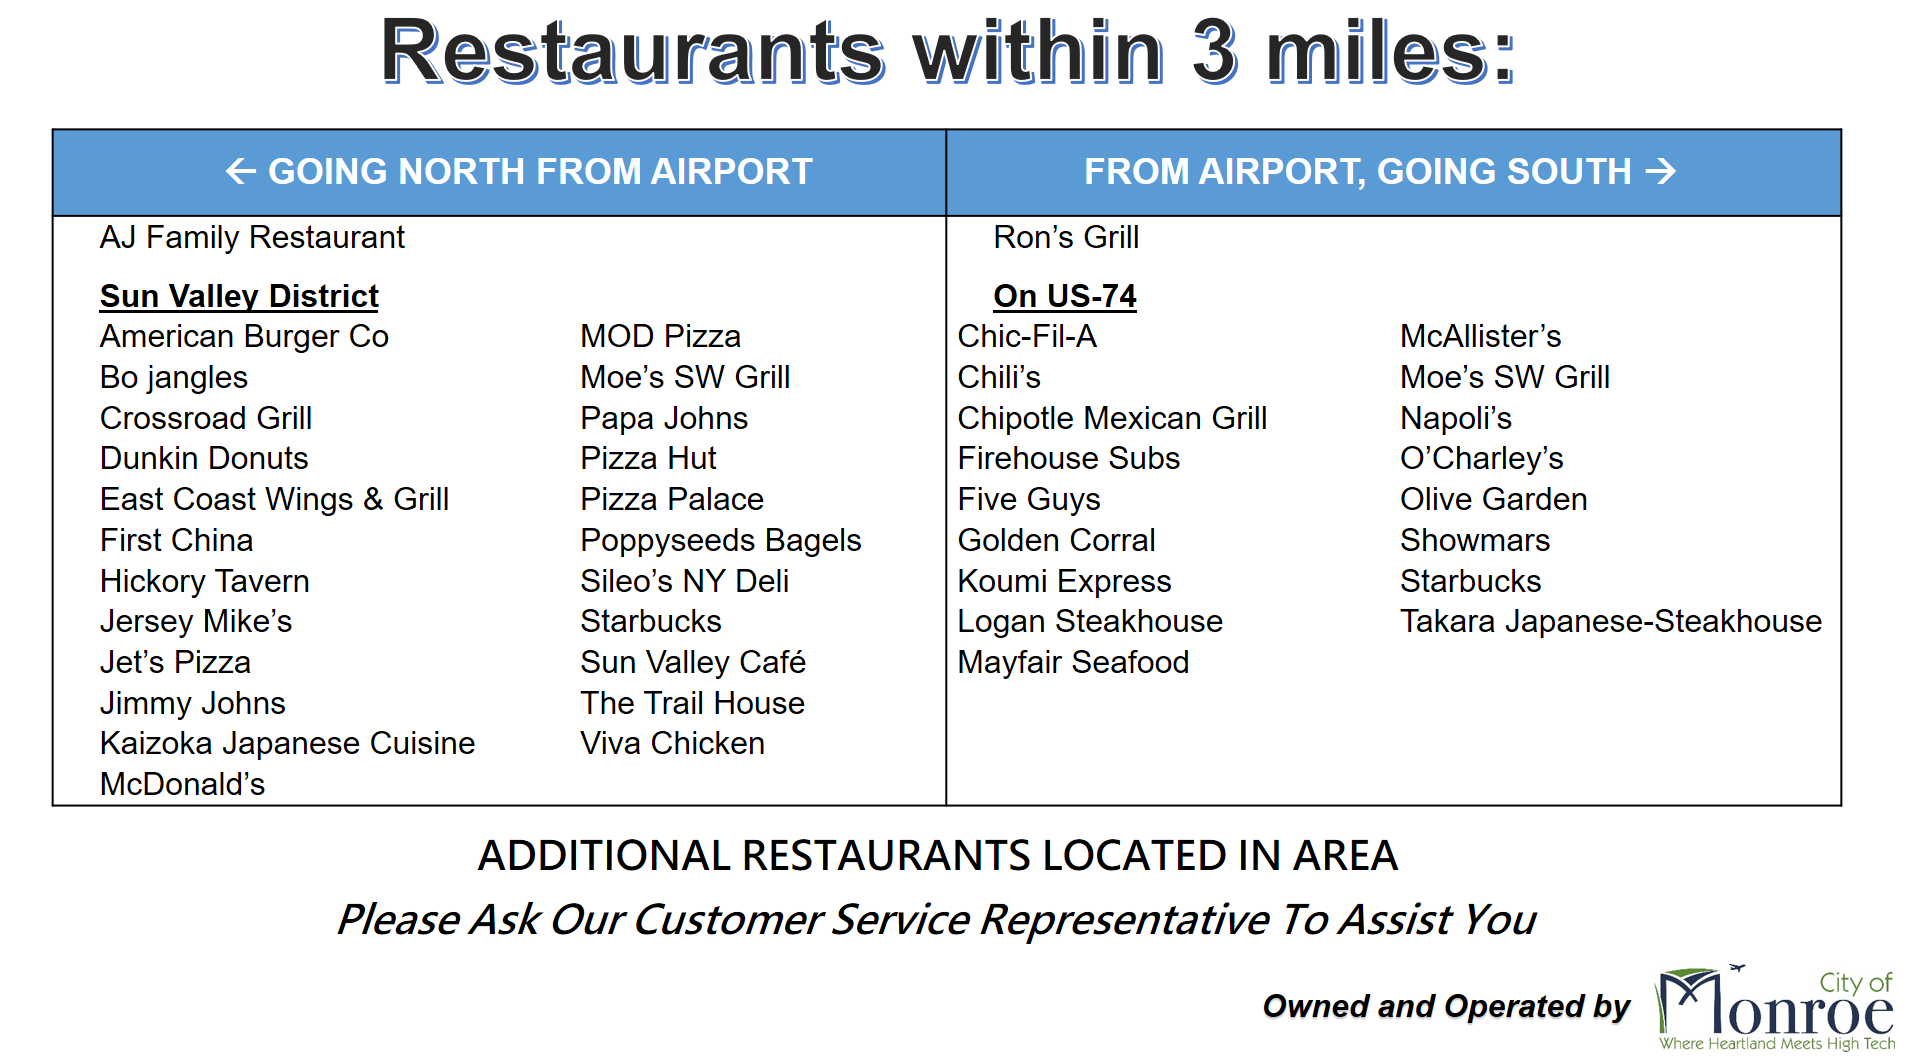 Airport Restaurants